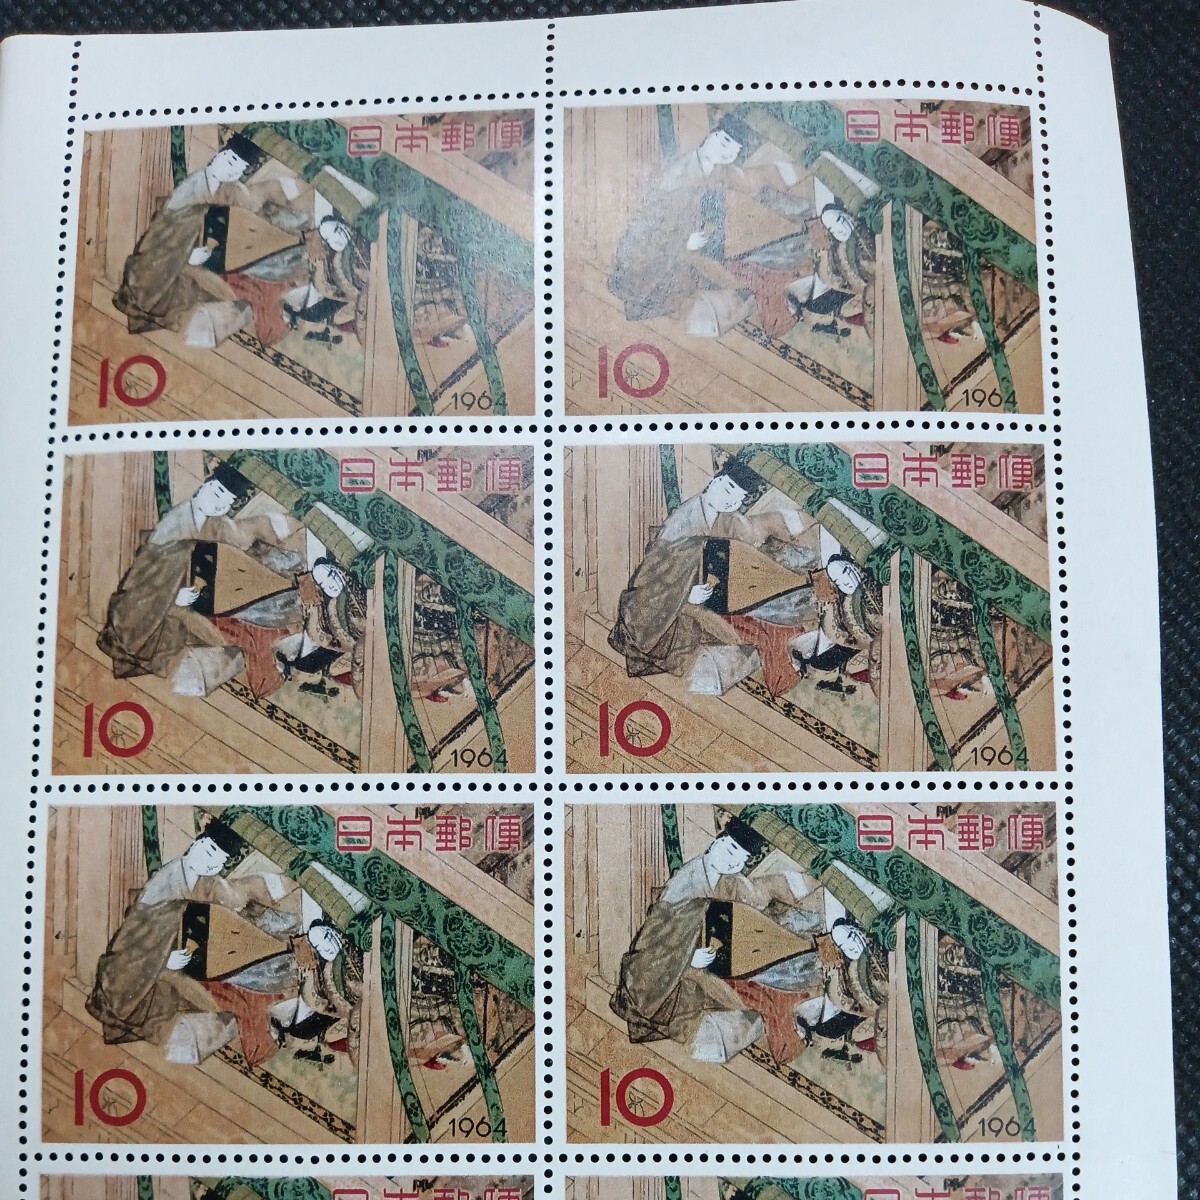 銘版（大蔵省印刷局製造)1964切手趣味週間 源氏物語 宿木 10円切手10連ブロックの画像2